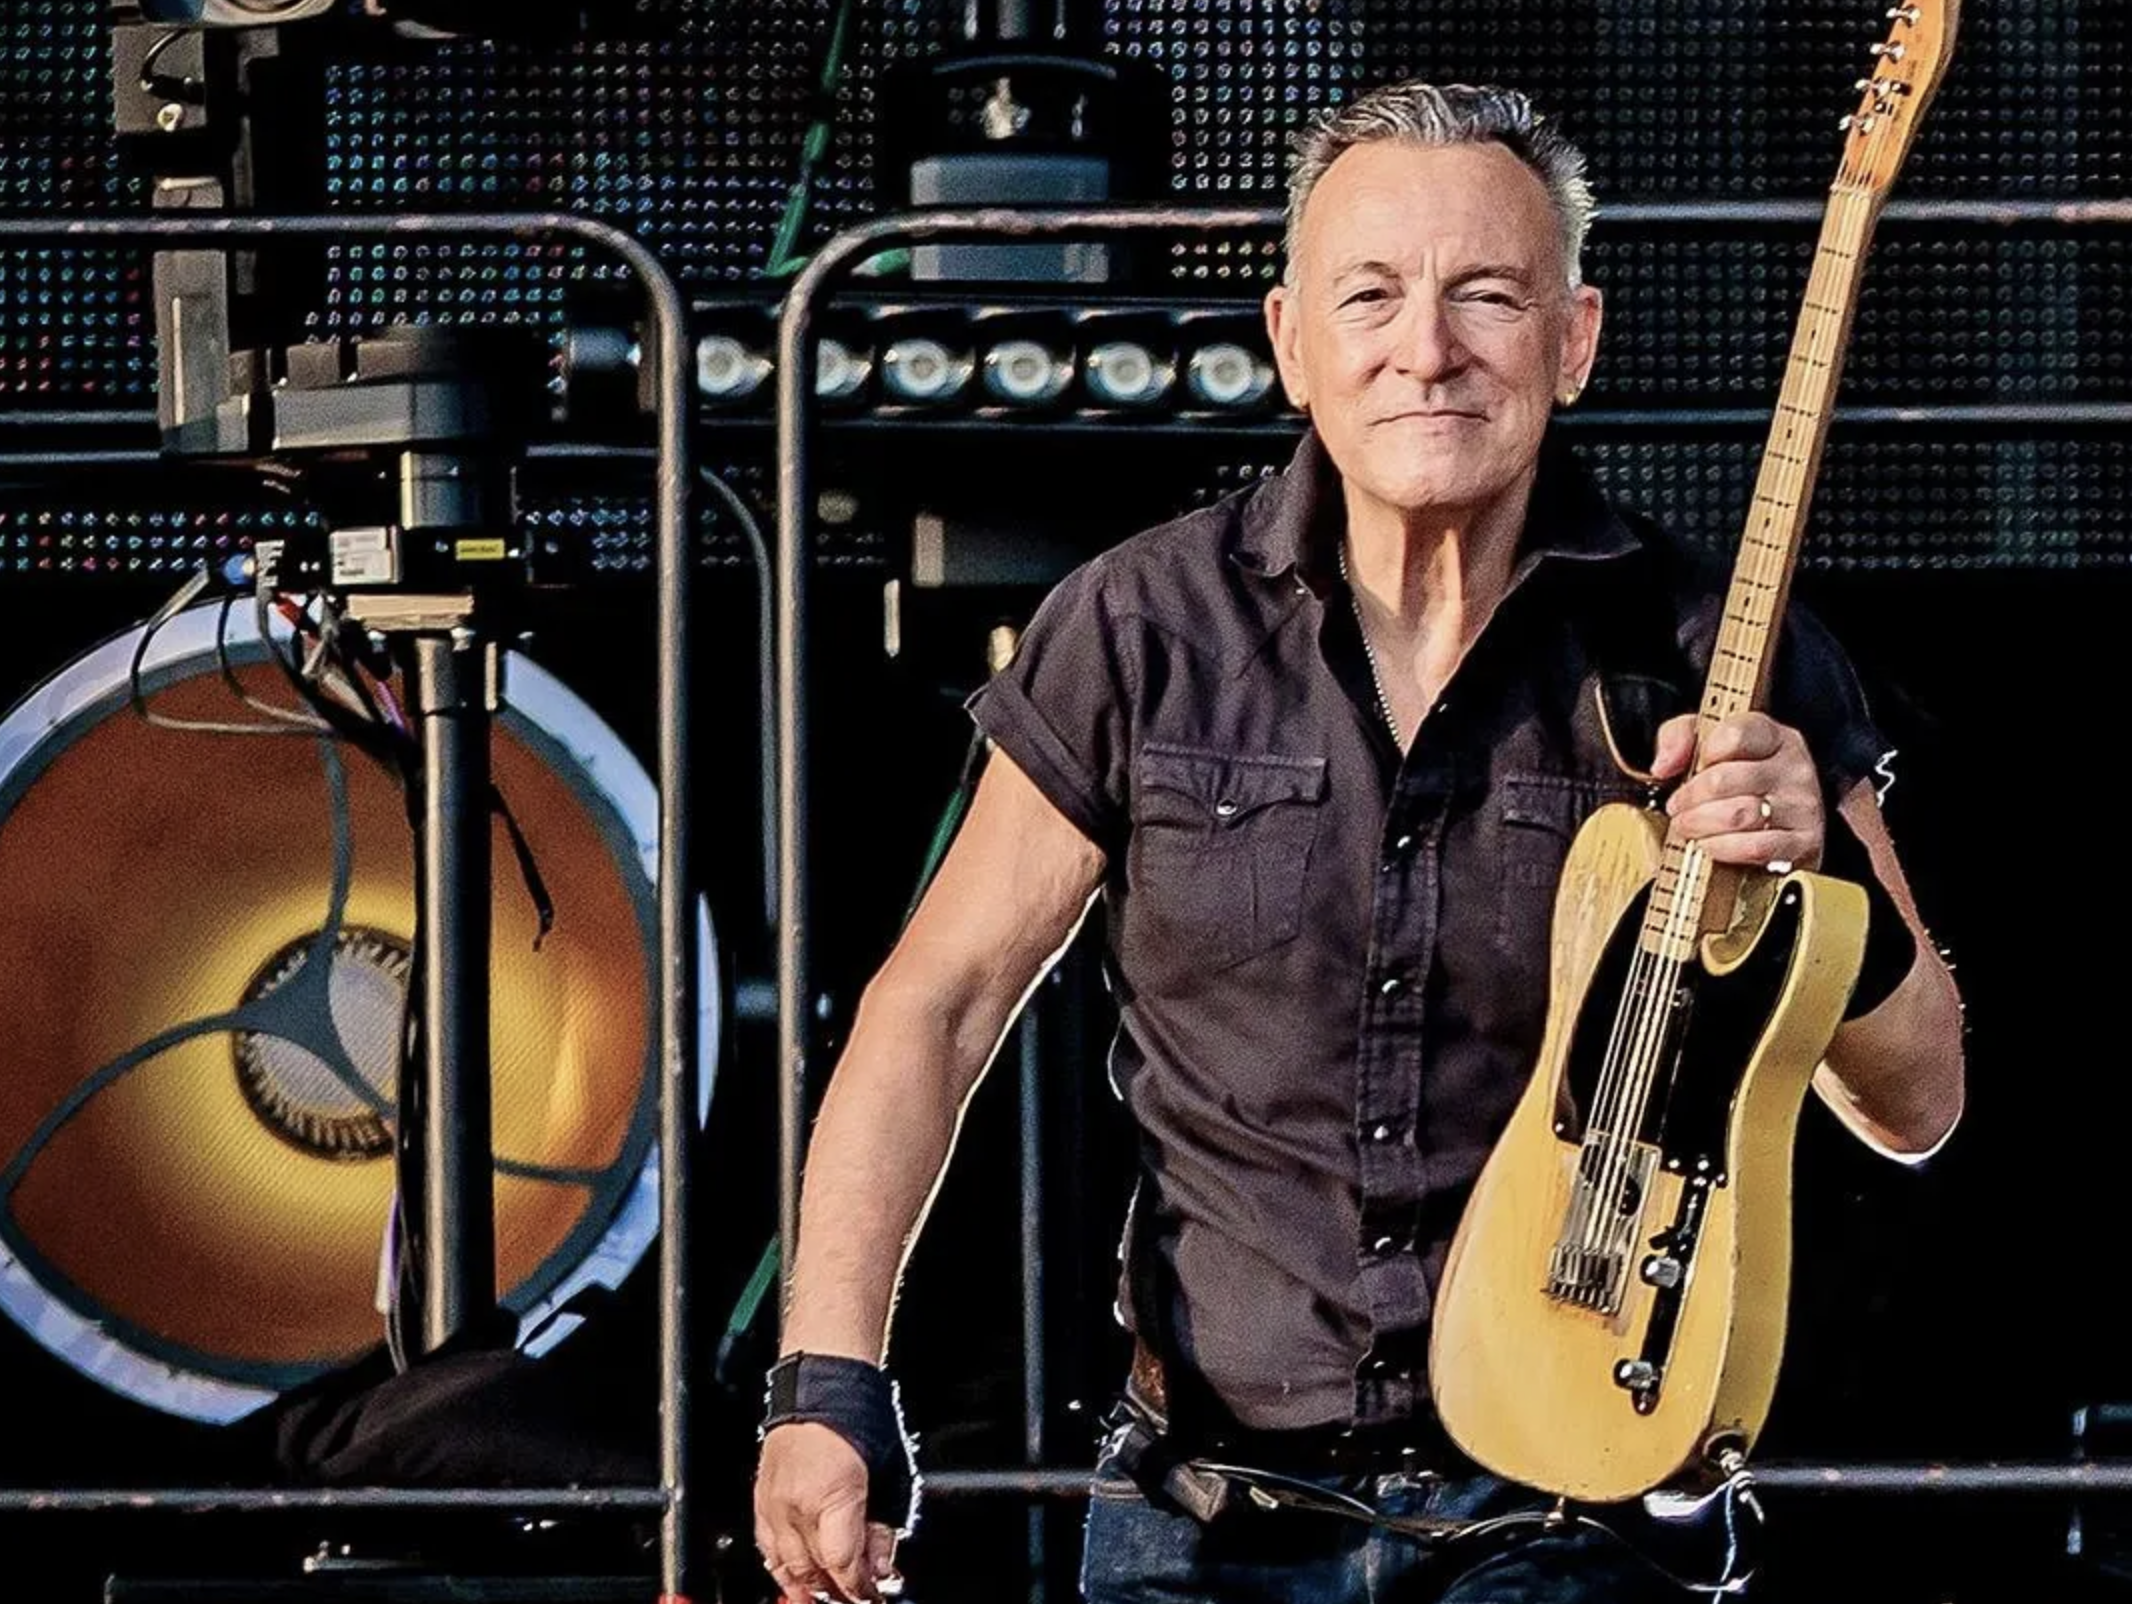 SERGIONE INFUSO/CORBIS/GETTY IMAGESBetter Days: “A medida que mi éxito aumentaba”, escribió Springsteen en sus memorias de 2016, “había algo en ese 'hombre rico con camisa de pobre' que me dejó un mal sabor de boca”.